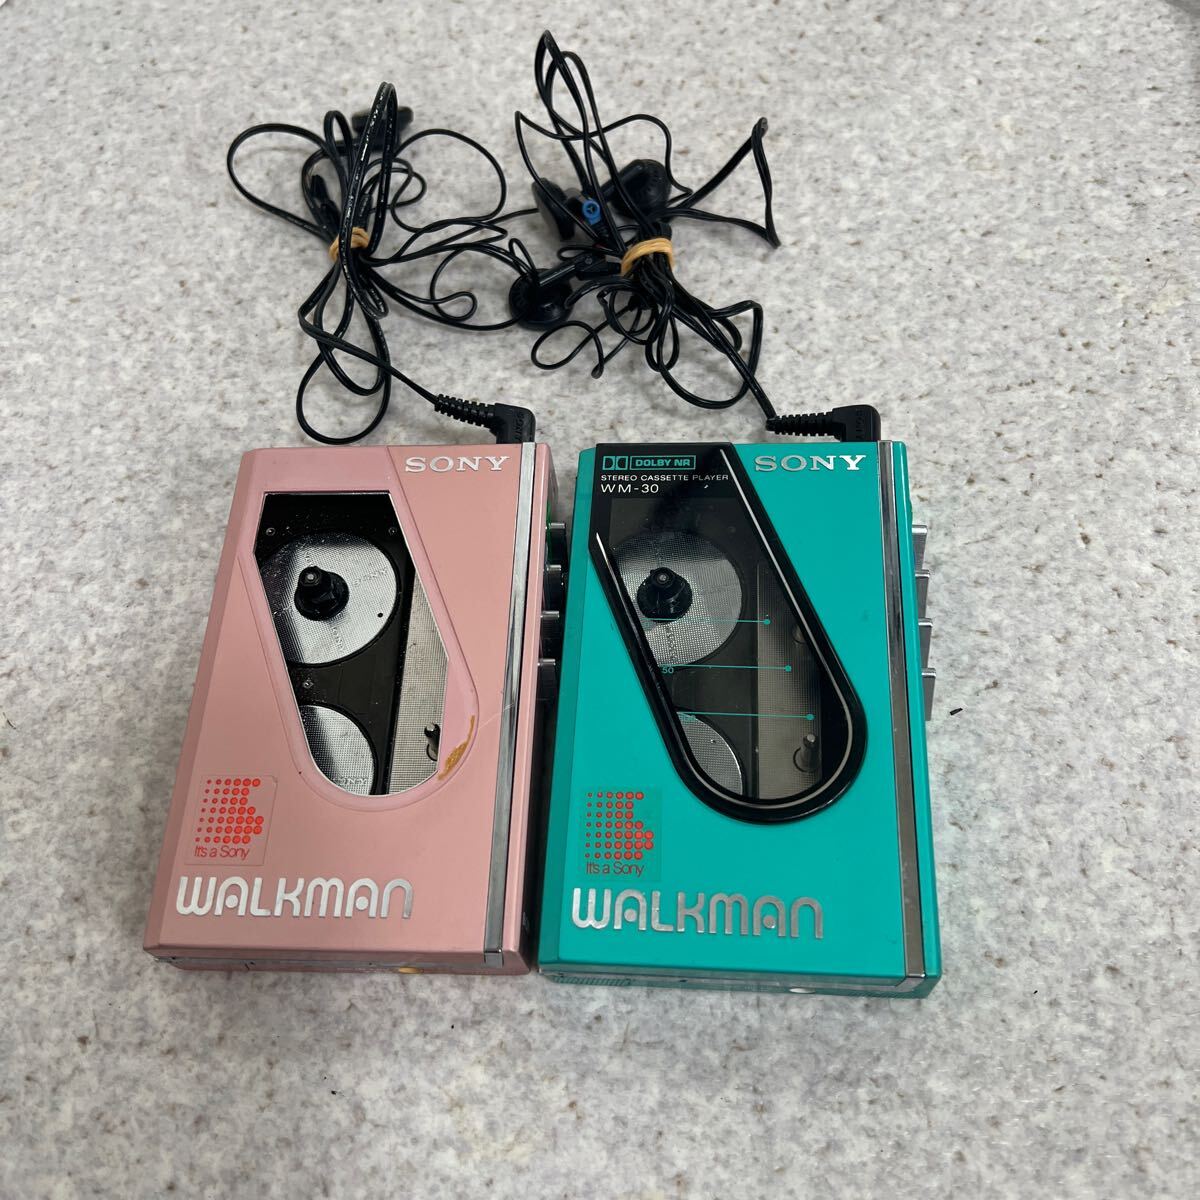 SONY WALKMAN Sony cassette Walkman WM-30 2 point set Junk 